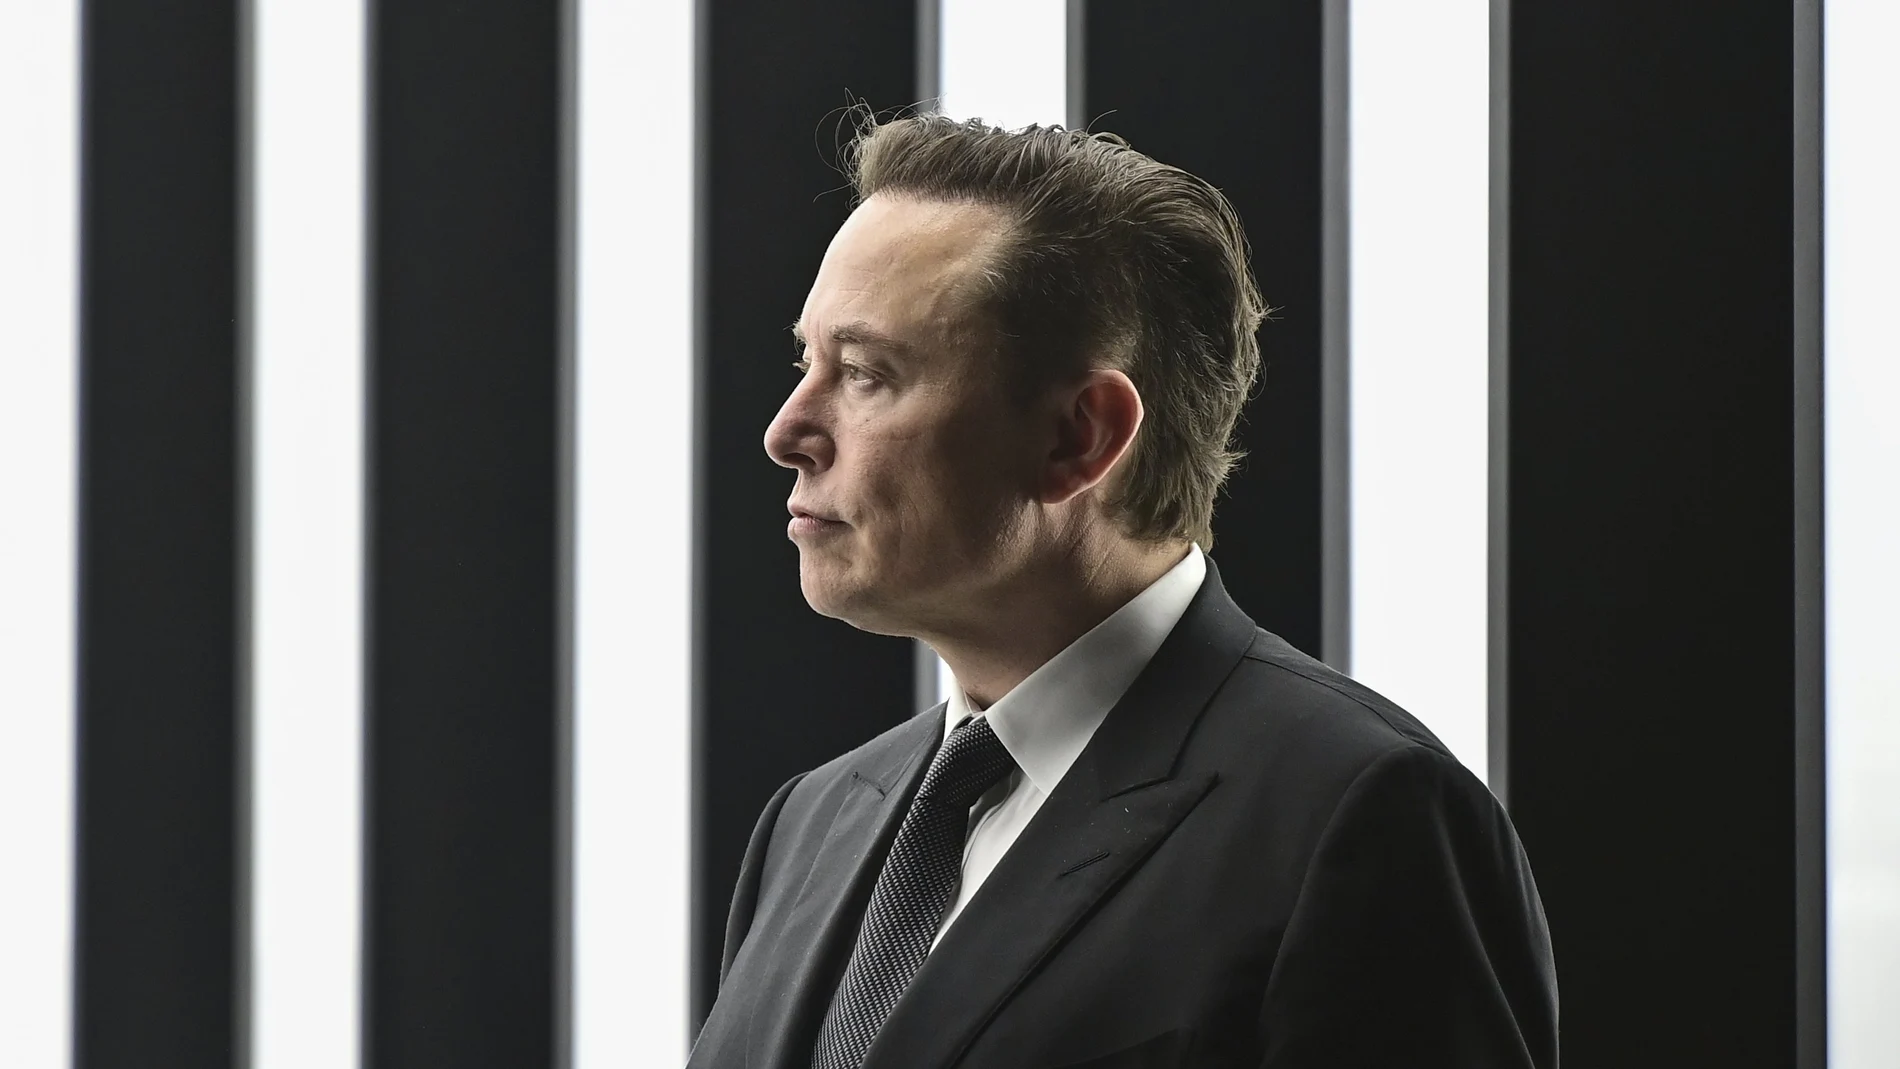 Elon Musk asistiendo a la apertura de una fábrica de Tesla en Berlín (Patrick Pleul/Pool via AP, File)